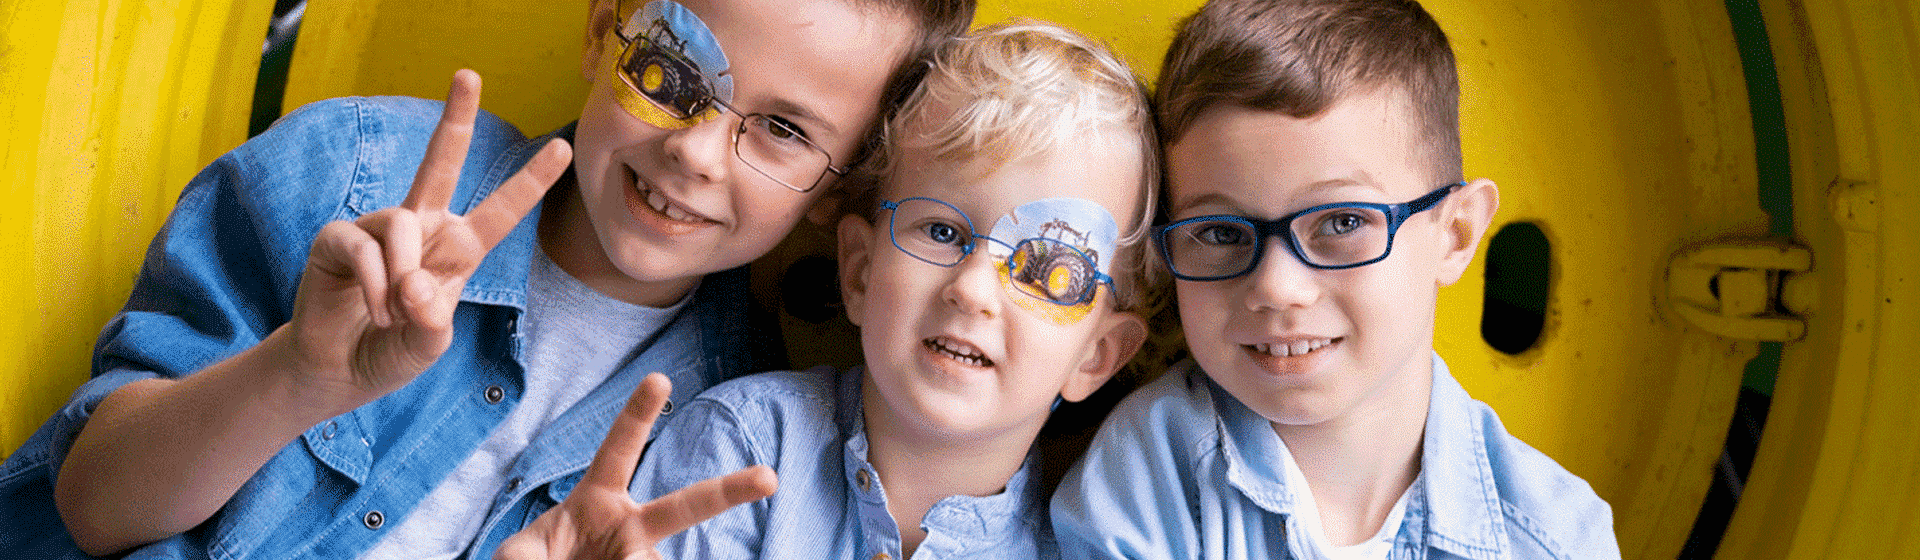 Drei Kinder tragen Brille und Trecker Aufgenpflaster